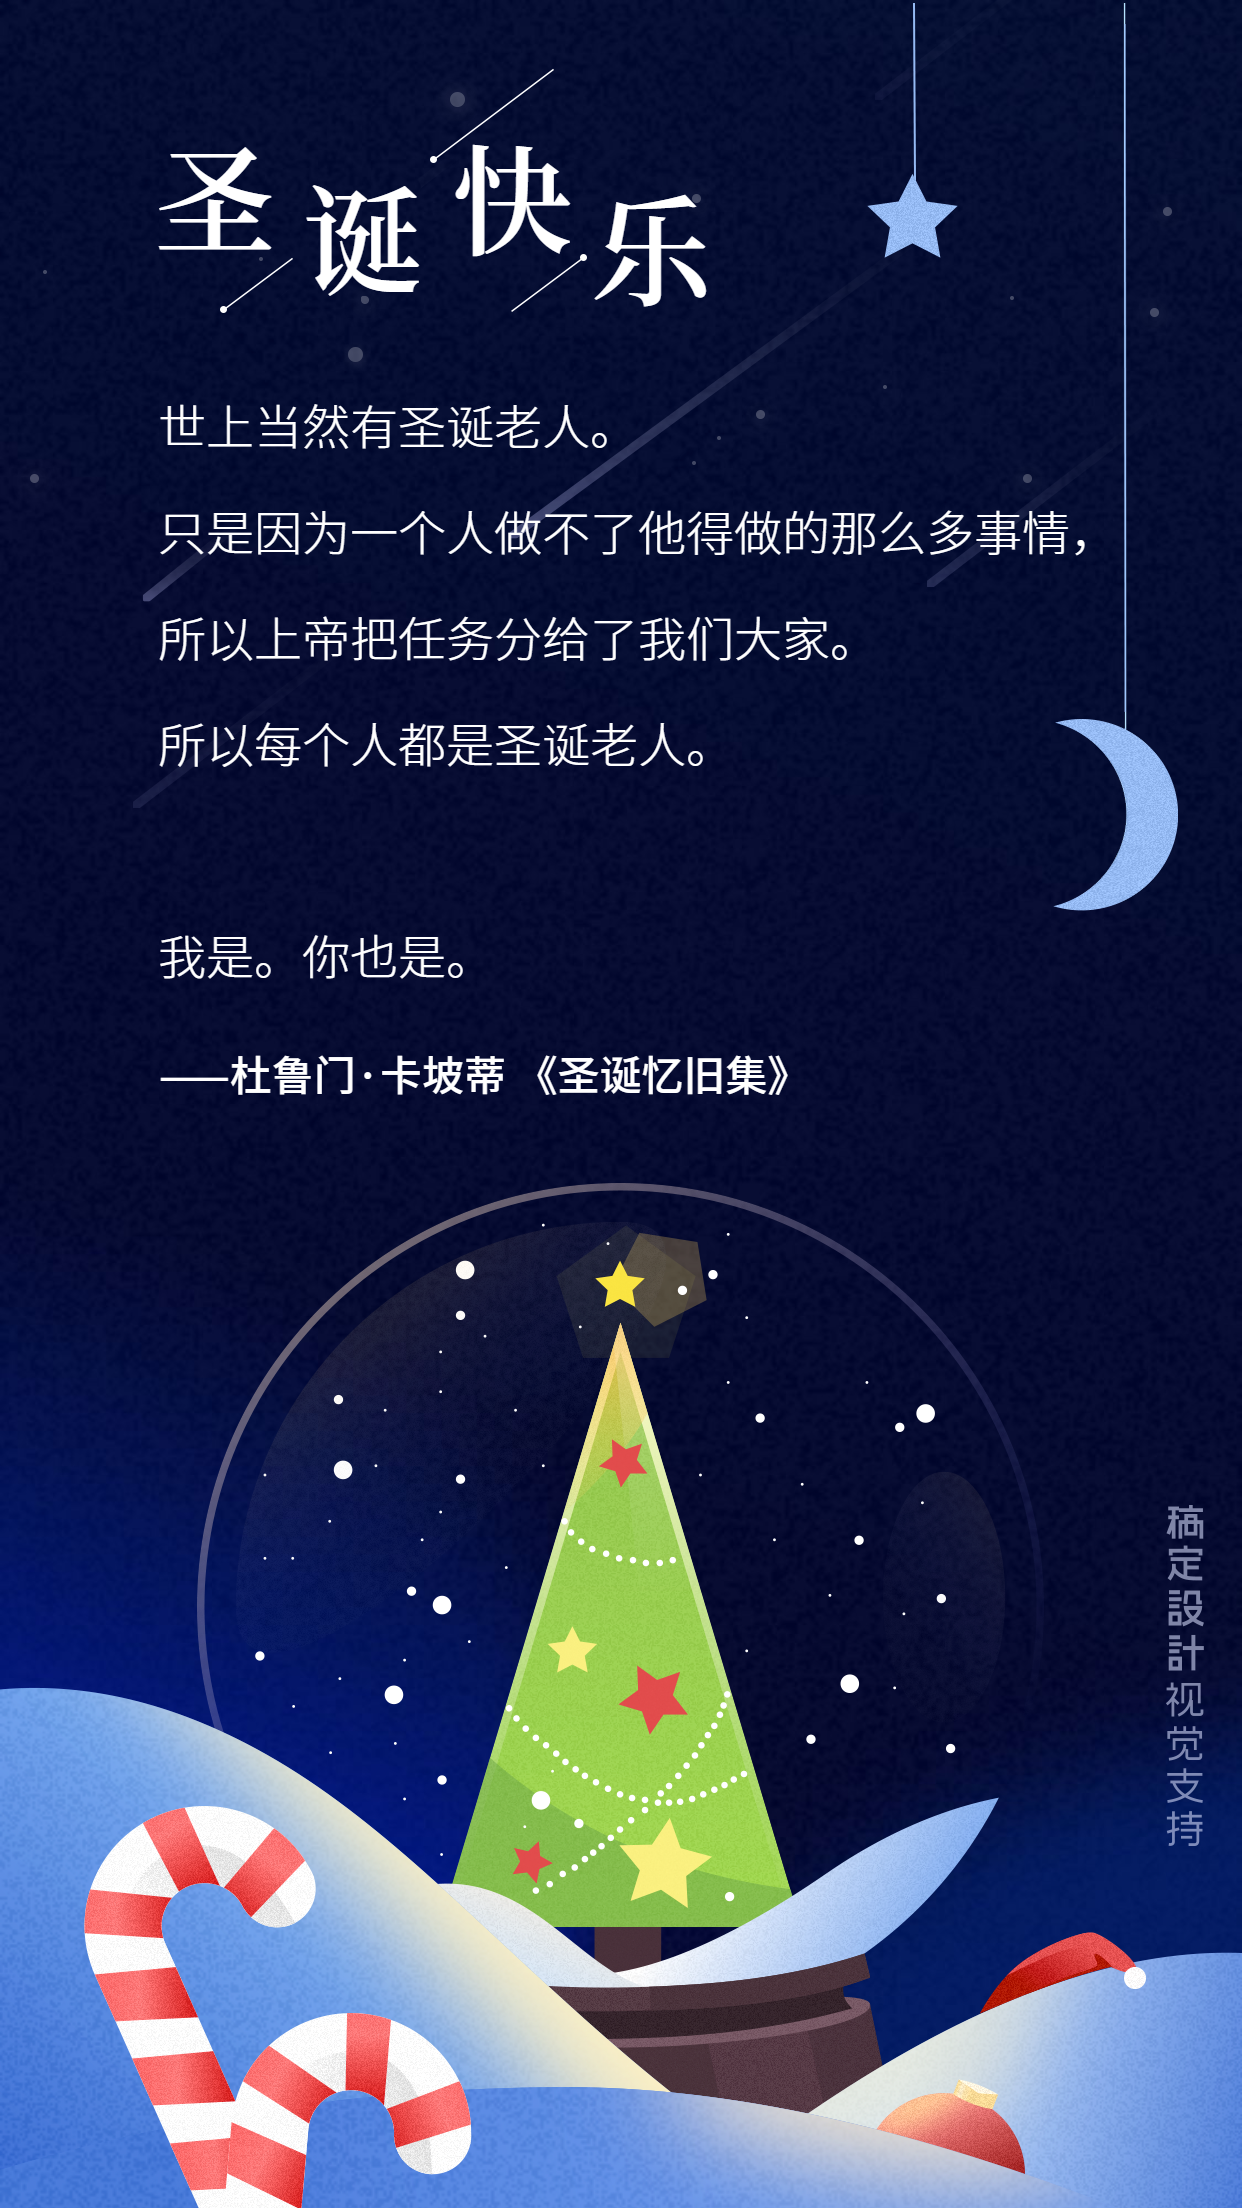 文艺/圣诞节祝福语/星空梦幻/水晶球